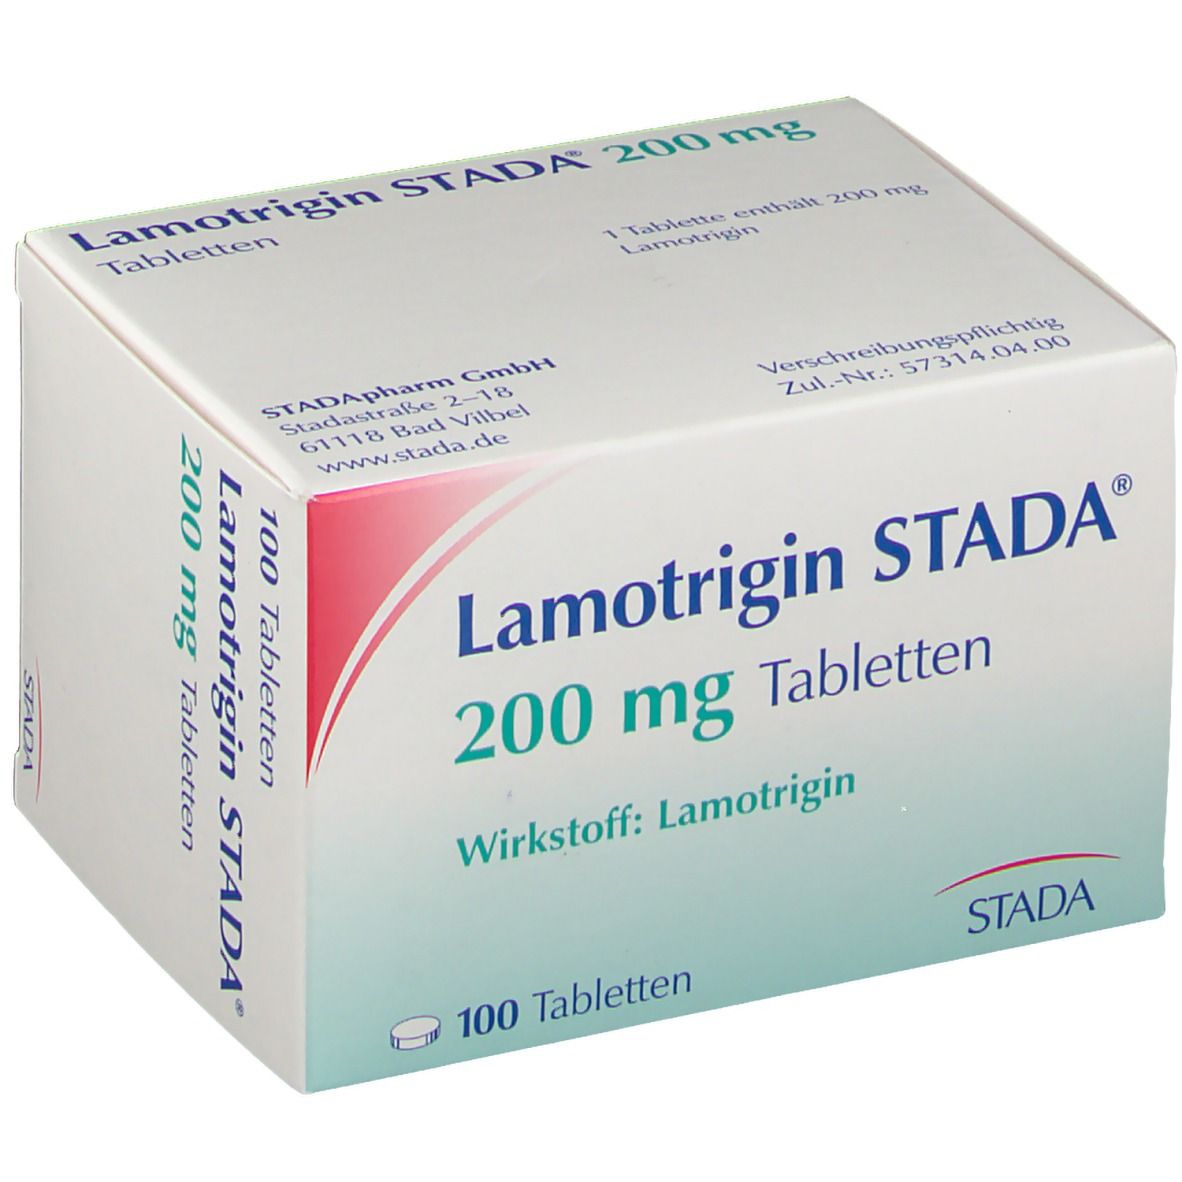 Lamotrigin STADA® 200 mg